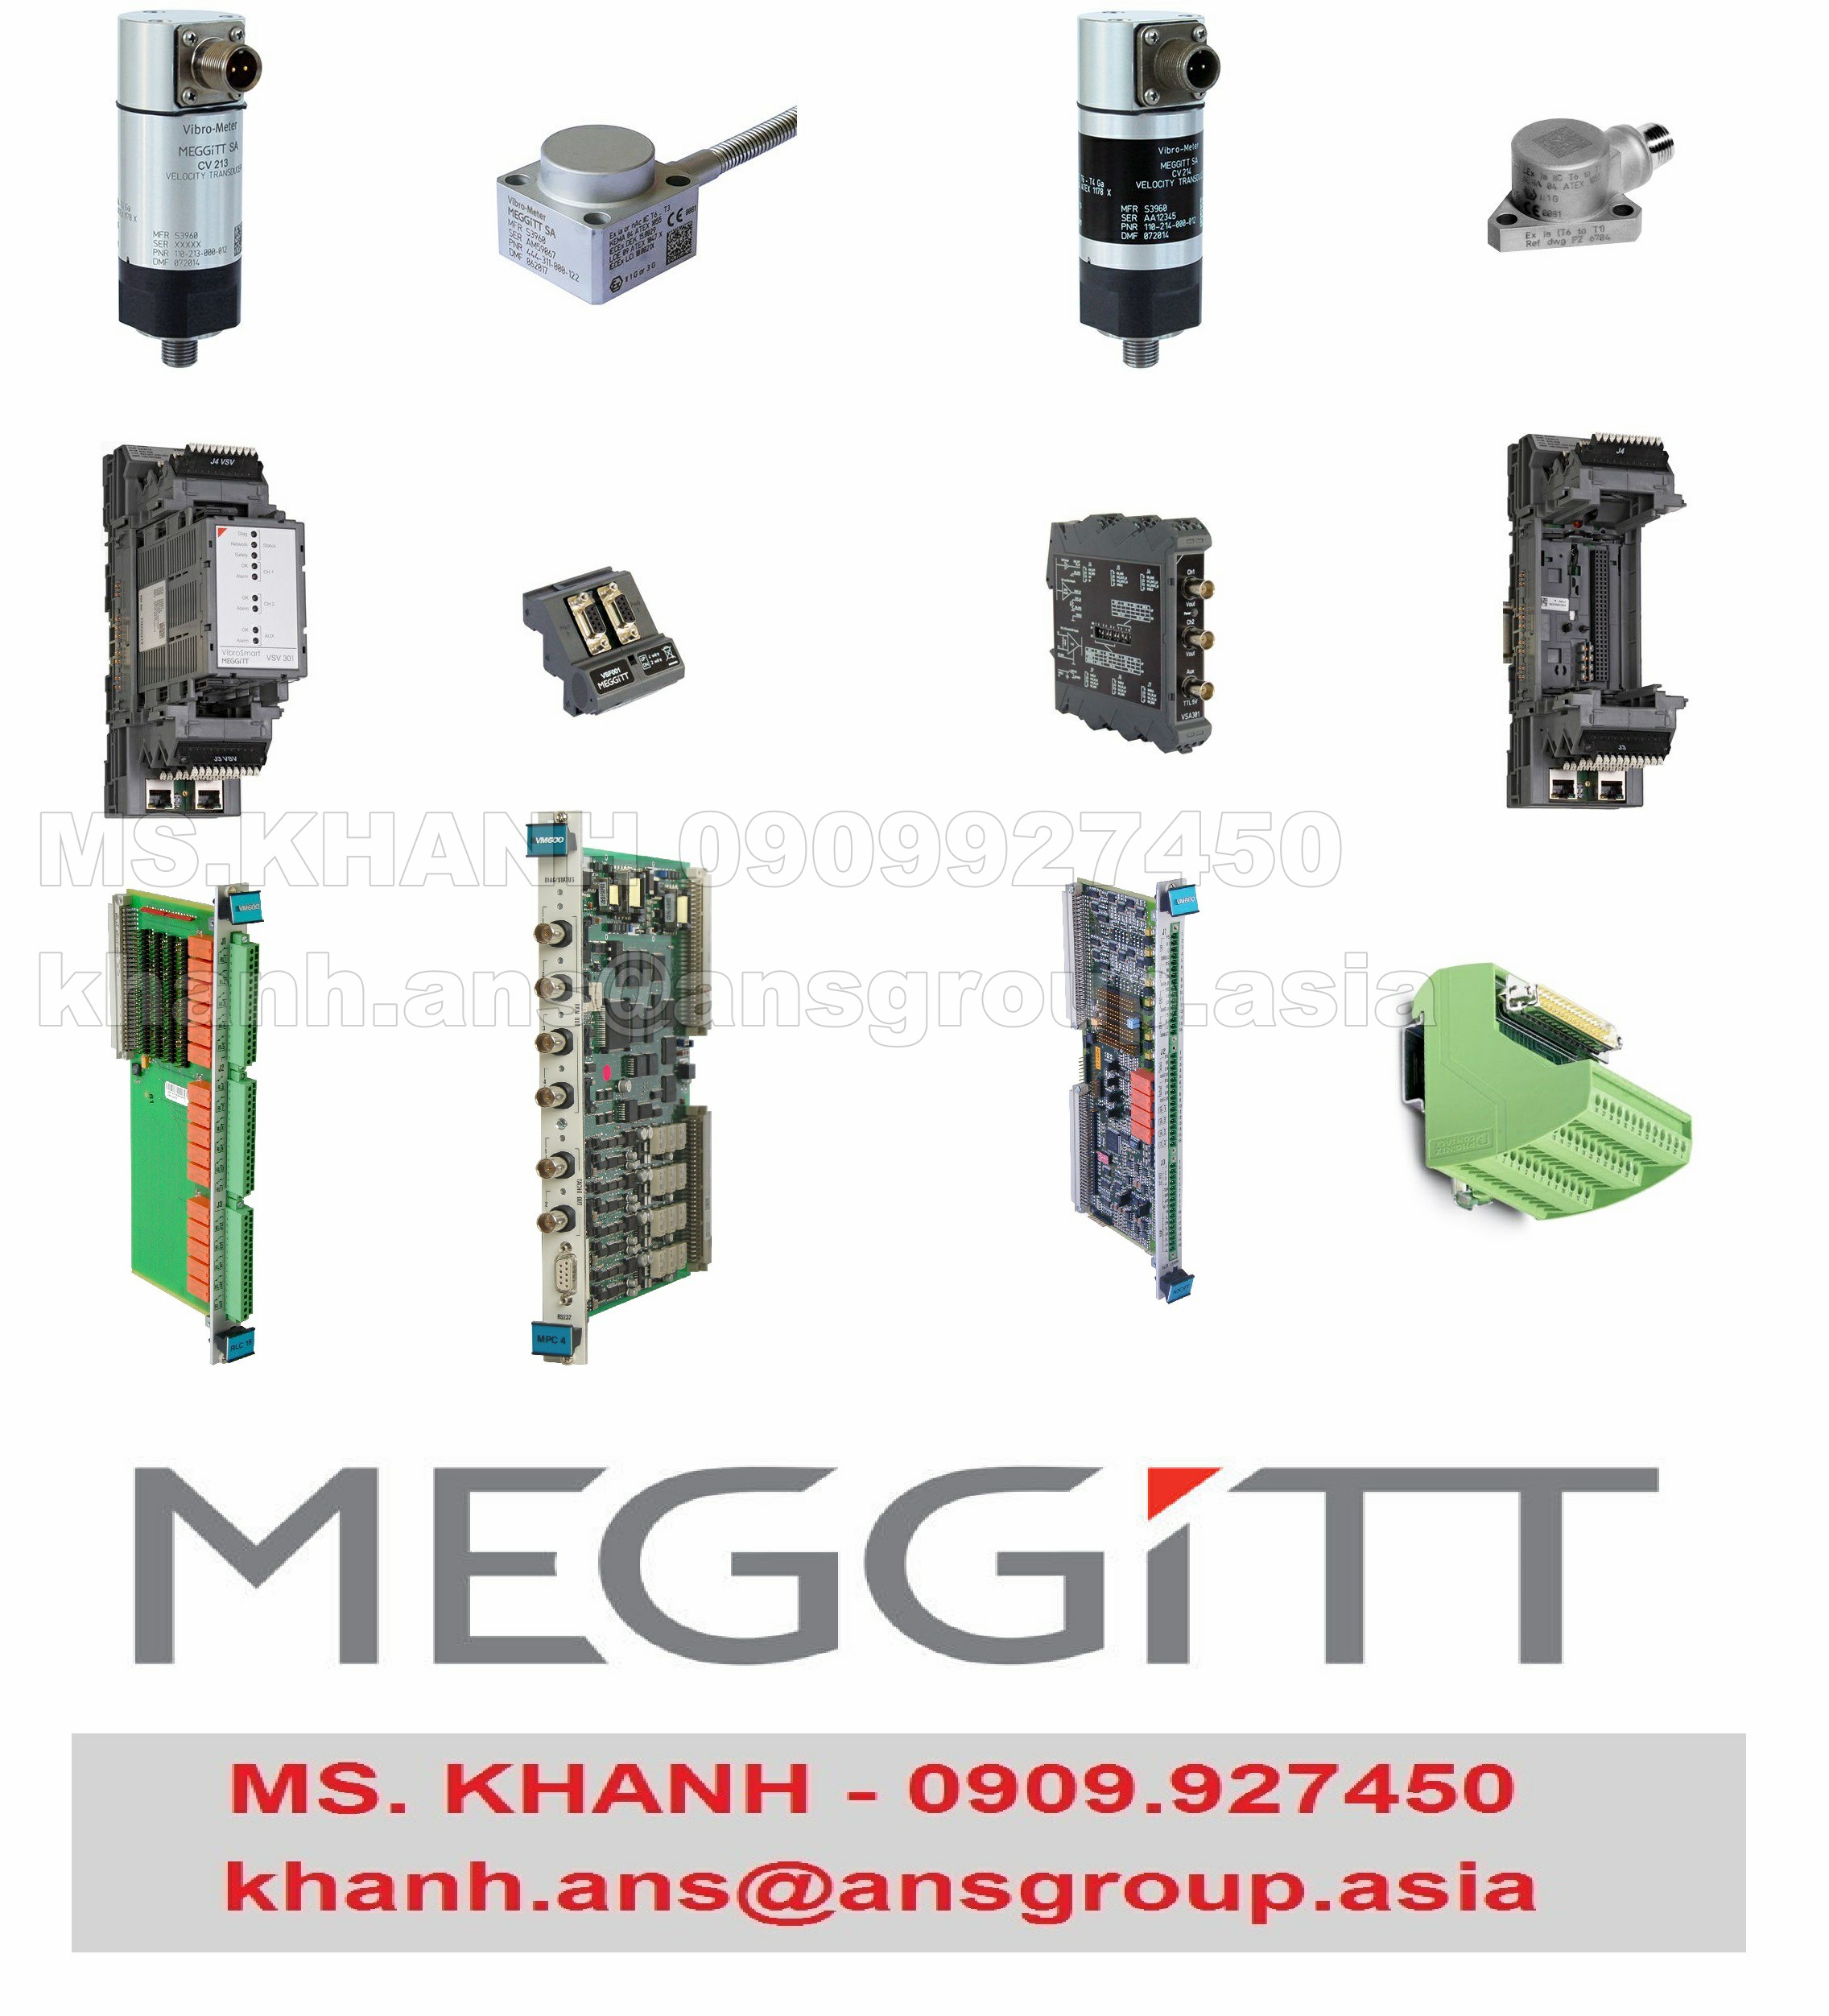 thiet-bi-200-560-000-1hh-input-output-card-for-mpc4-meggitt-vietnam.png